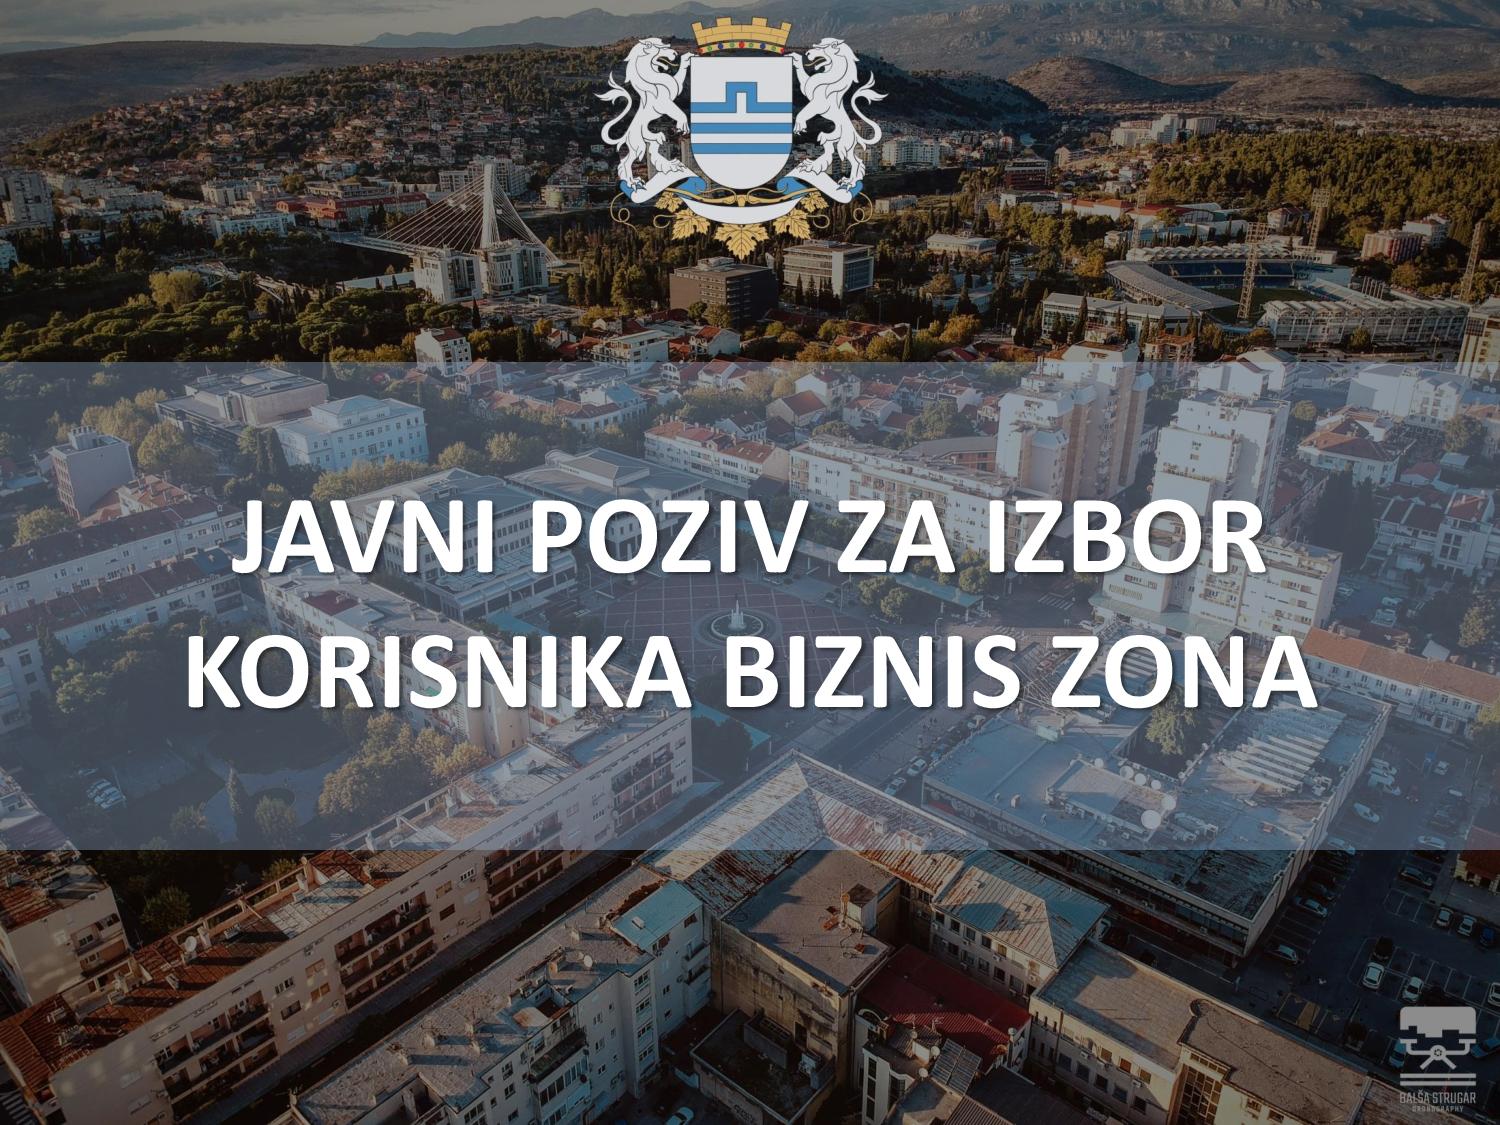 Objavljen drugi javni poziv za izbor korisnika biznis zona u Podgorici